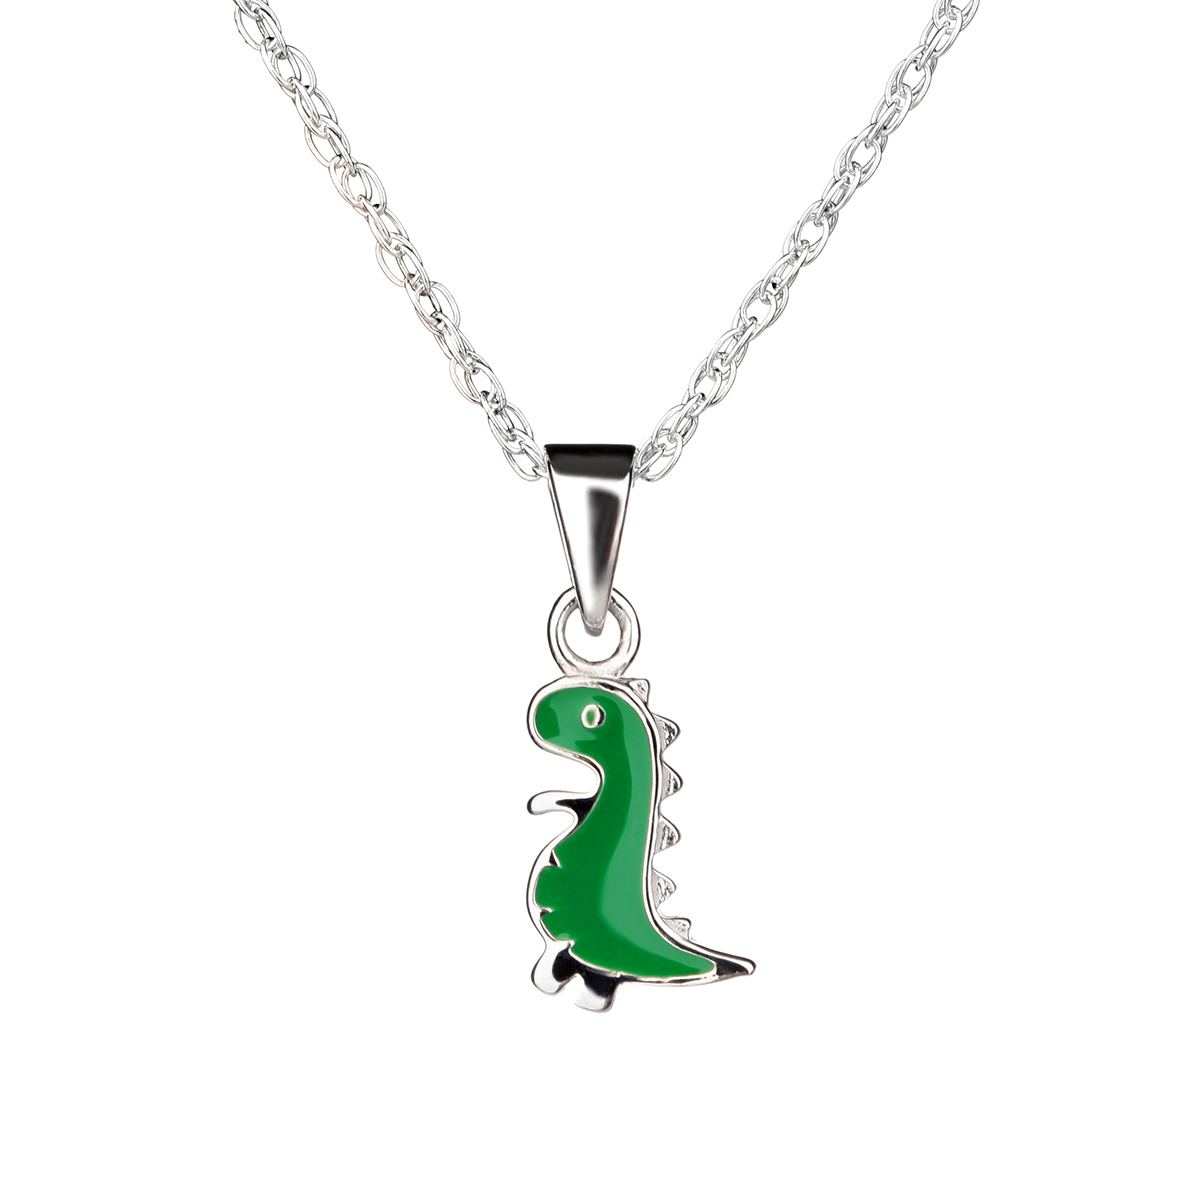 Little Nessie - süße Loch Ness Monster Kette für Kinder - Sterling Silber & Emaille